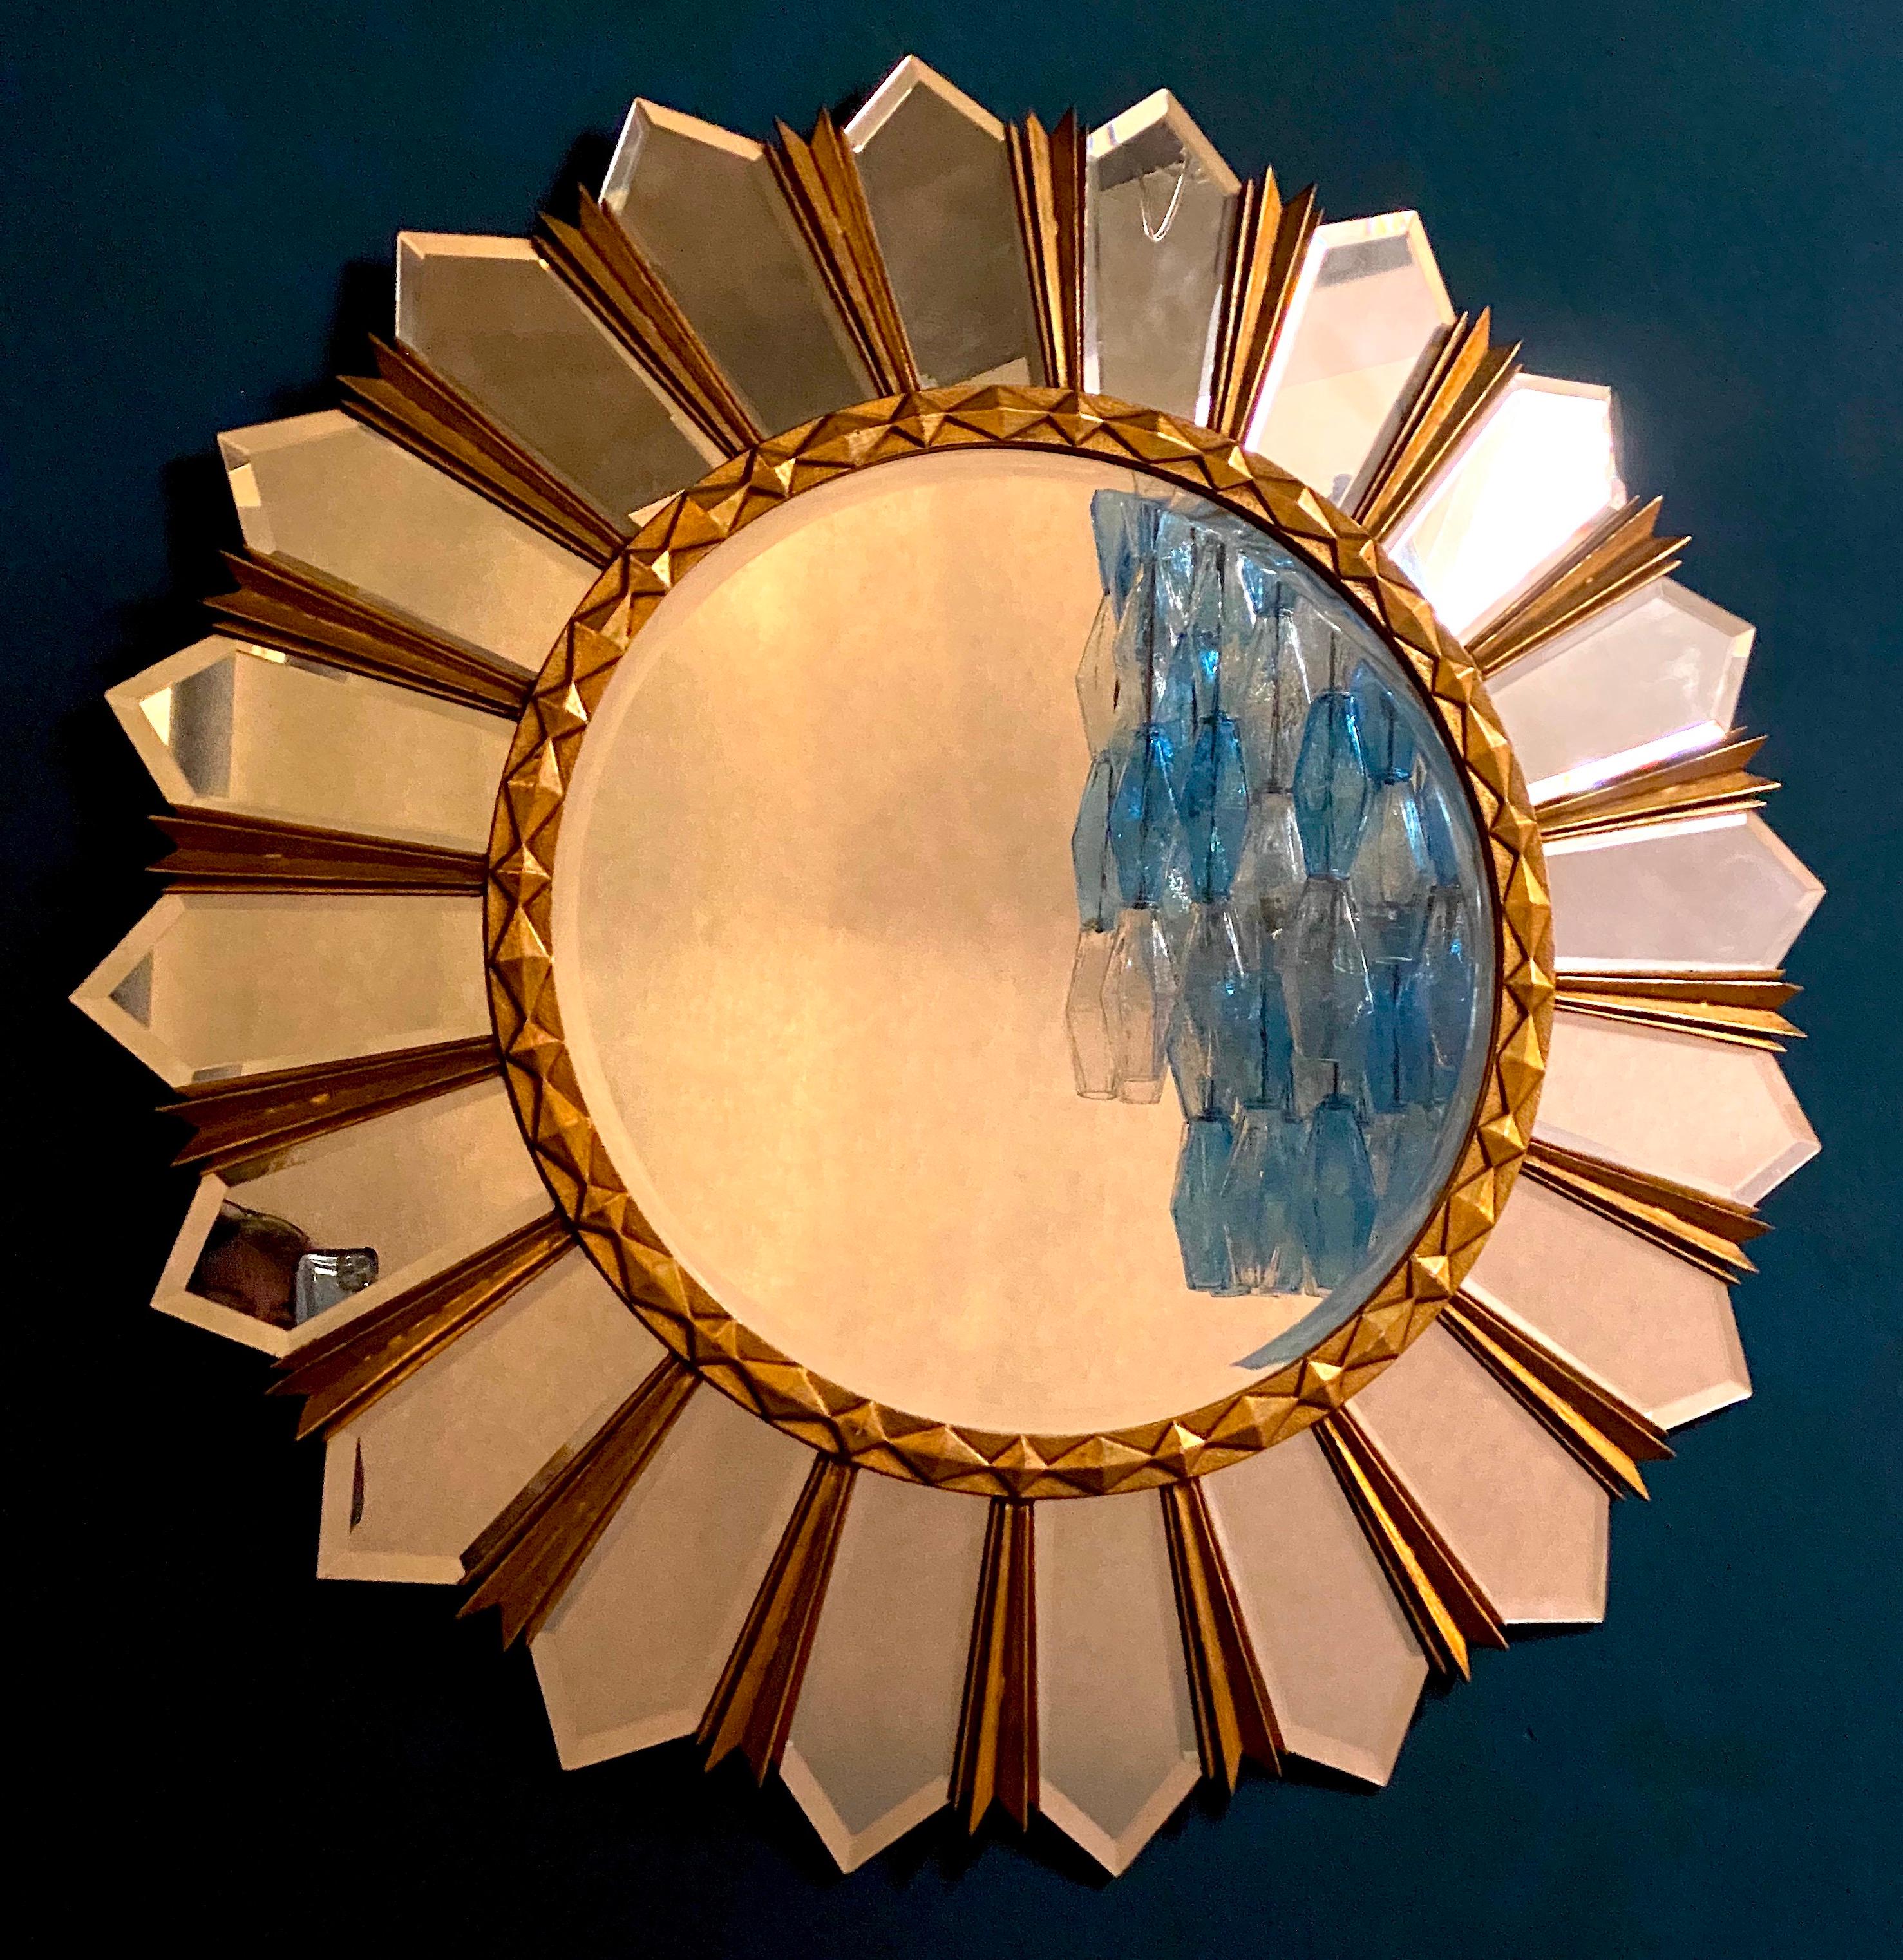 Magnifique miroir doré en forme de soleil, avec un centre en verre miroir rond dans un cadre moulé.
Mesures : Diamètre 100cm 
Il s'agit d'un reflet de quelque chose d'autre, qui n'a rien à voir avec le miroir.
Parfait état vintage.
       